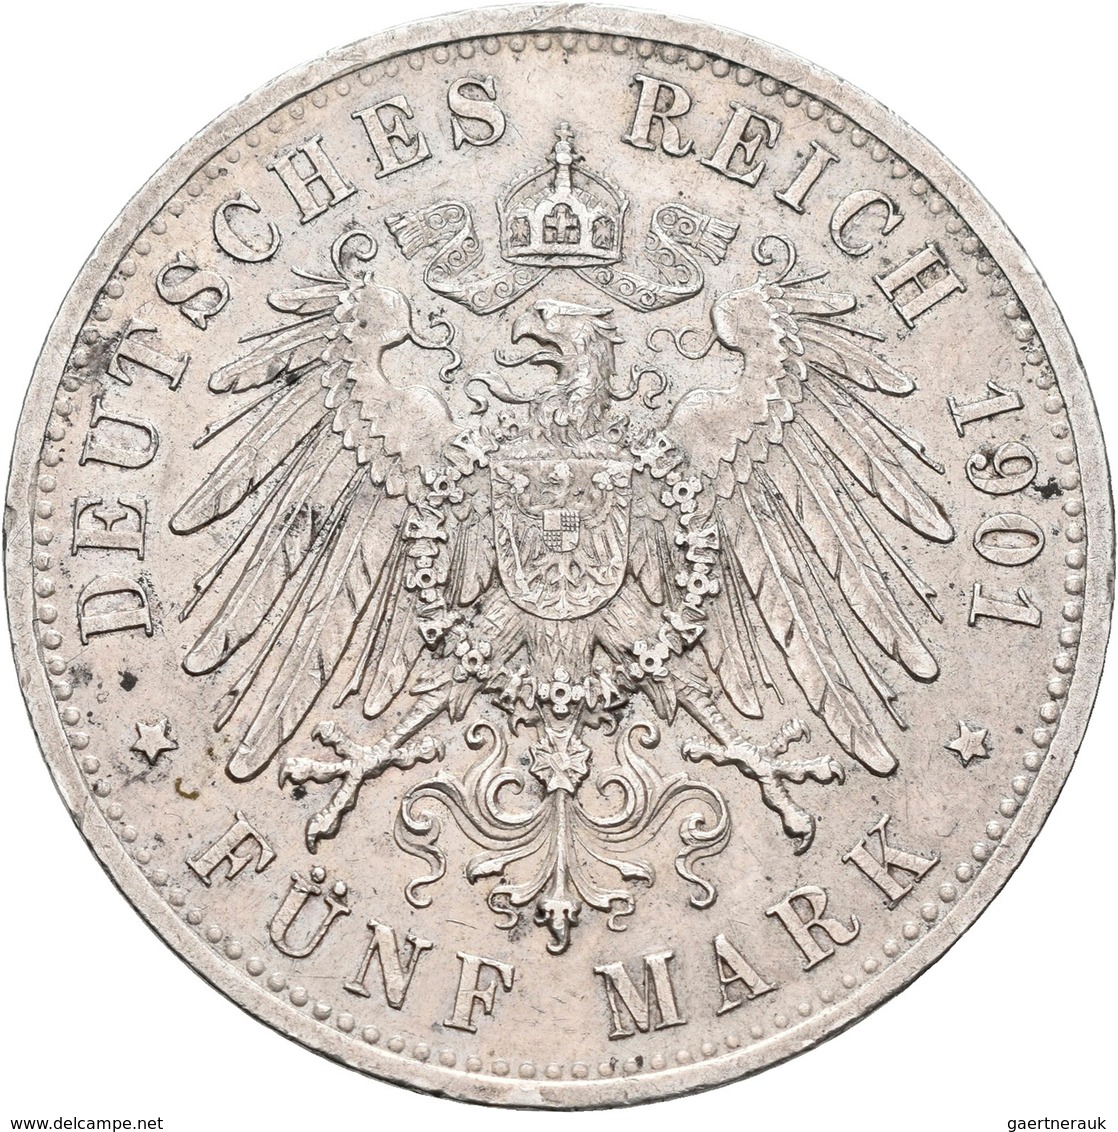 Sachsen-Altenburg: Ernst 1853-1908: 5 Mark 1901 A, Zum 75. Geburtstag, Jaeger 143. Auflage Nur 20.00 - Taler Et Doppeltaler